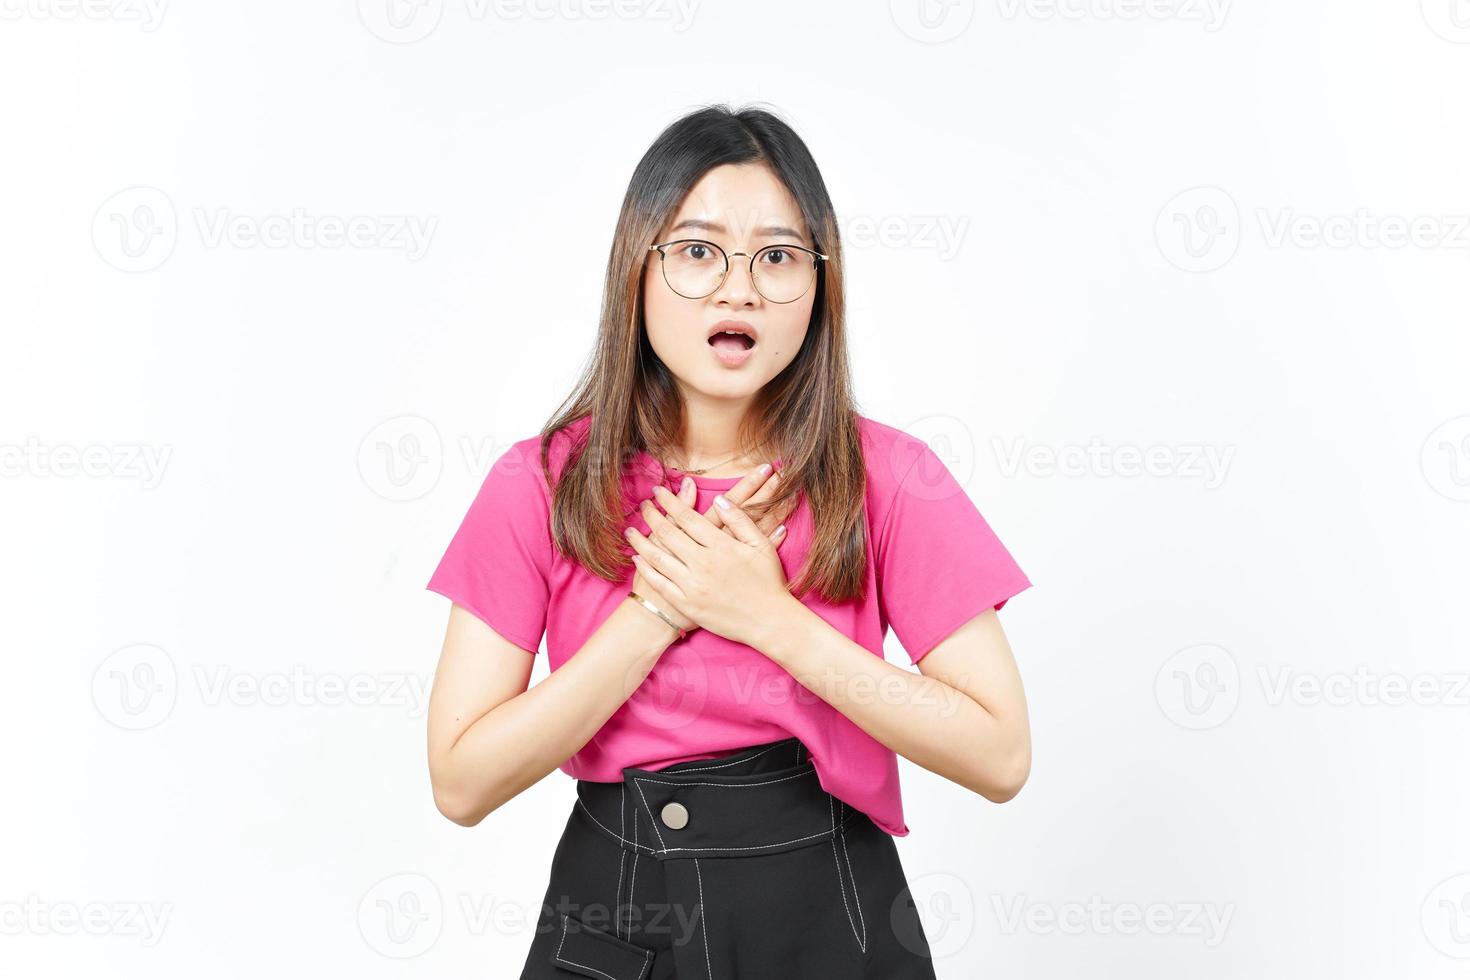 händer på bröst med chockade ansikte uttryck av skön asiatisk kvinna isolerat på vit bakgrund foto